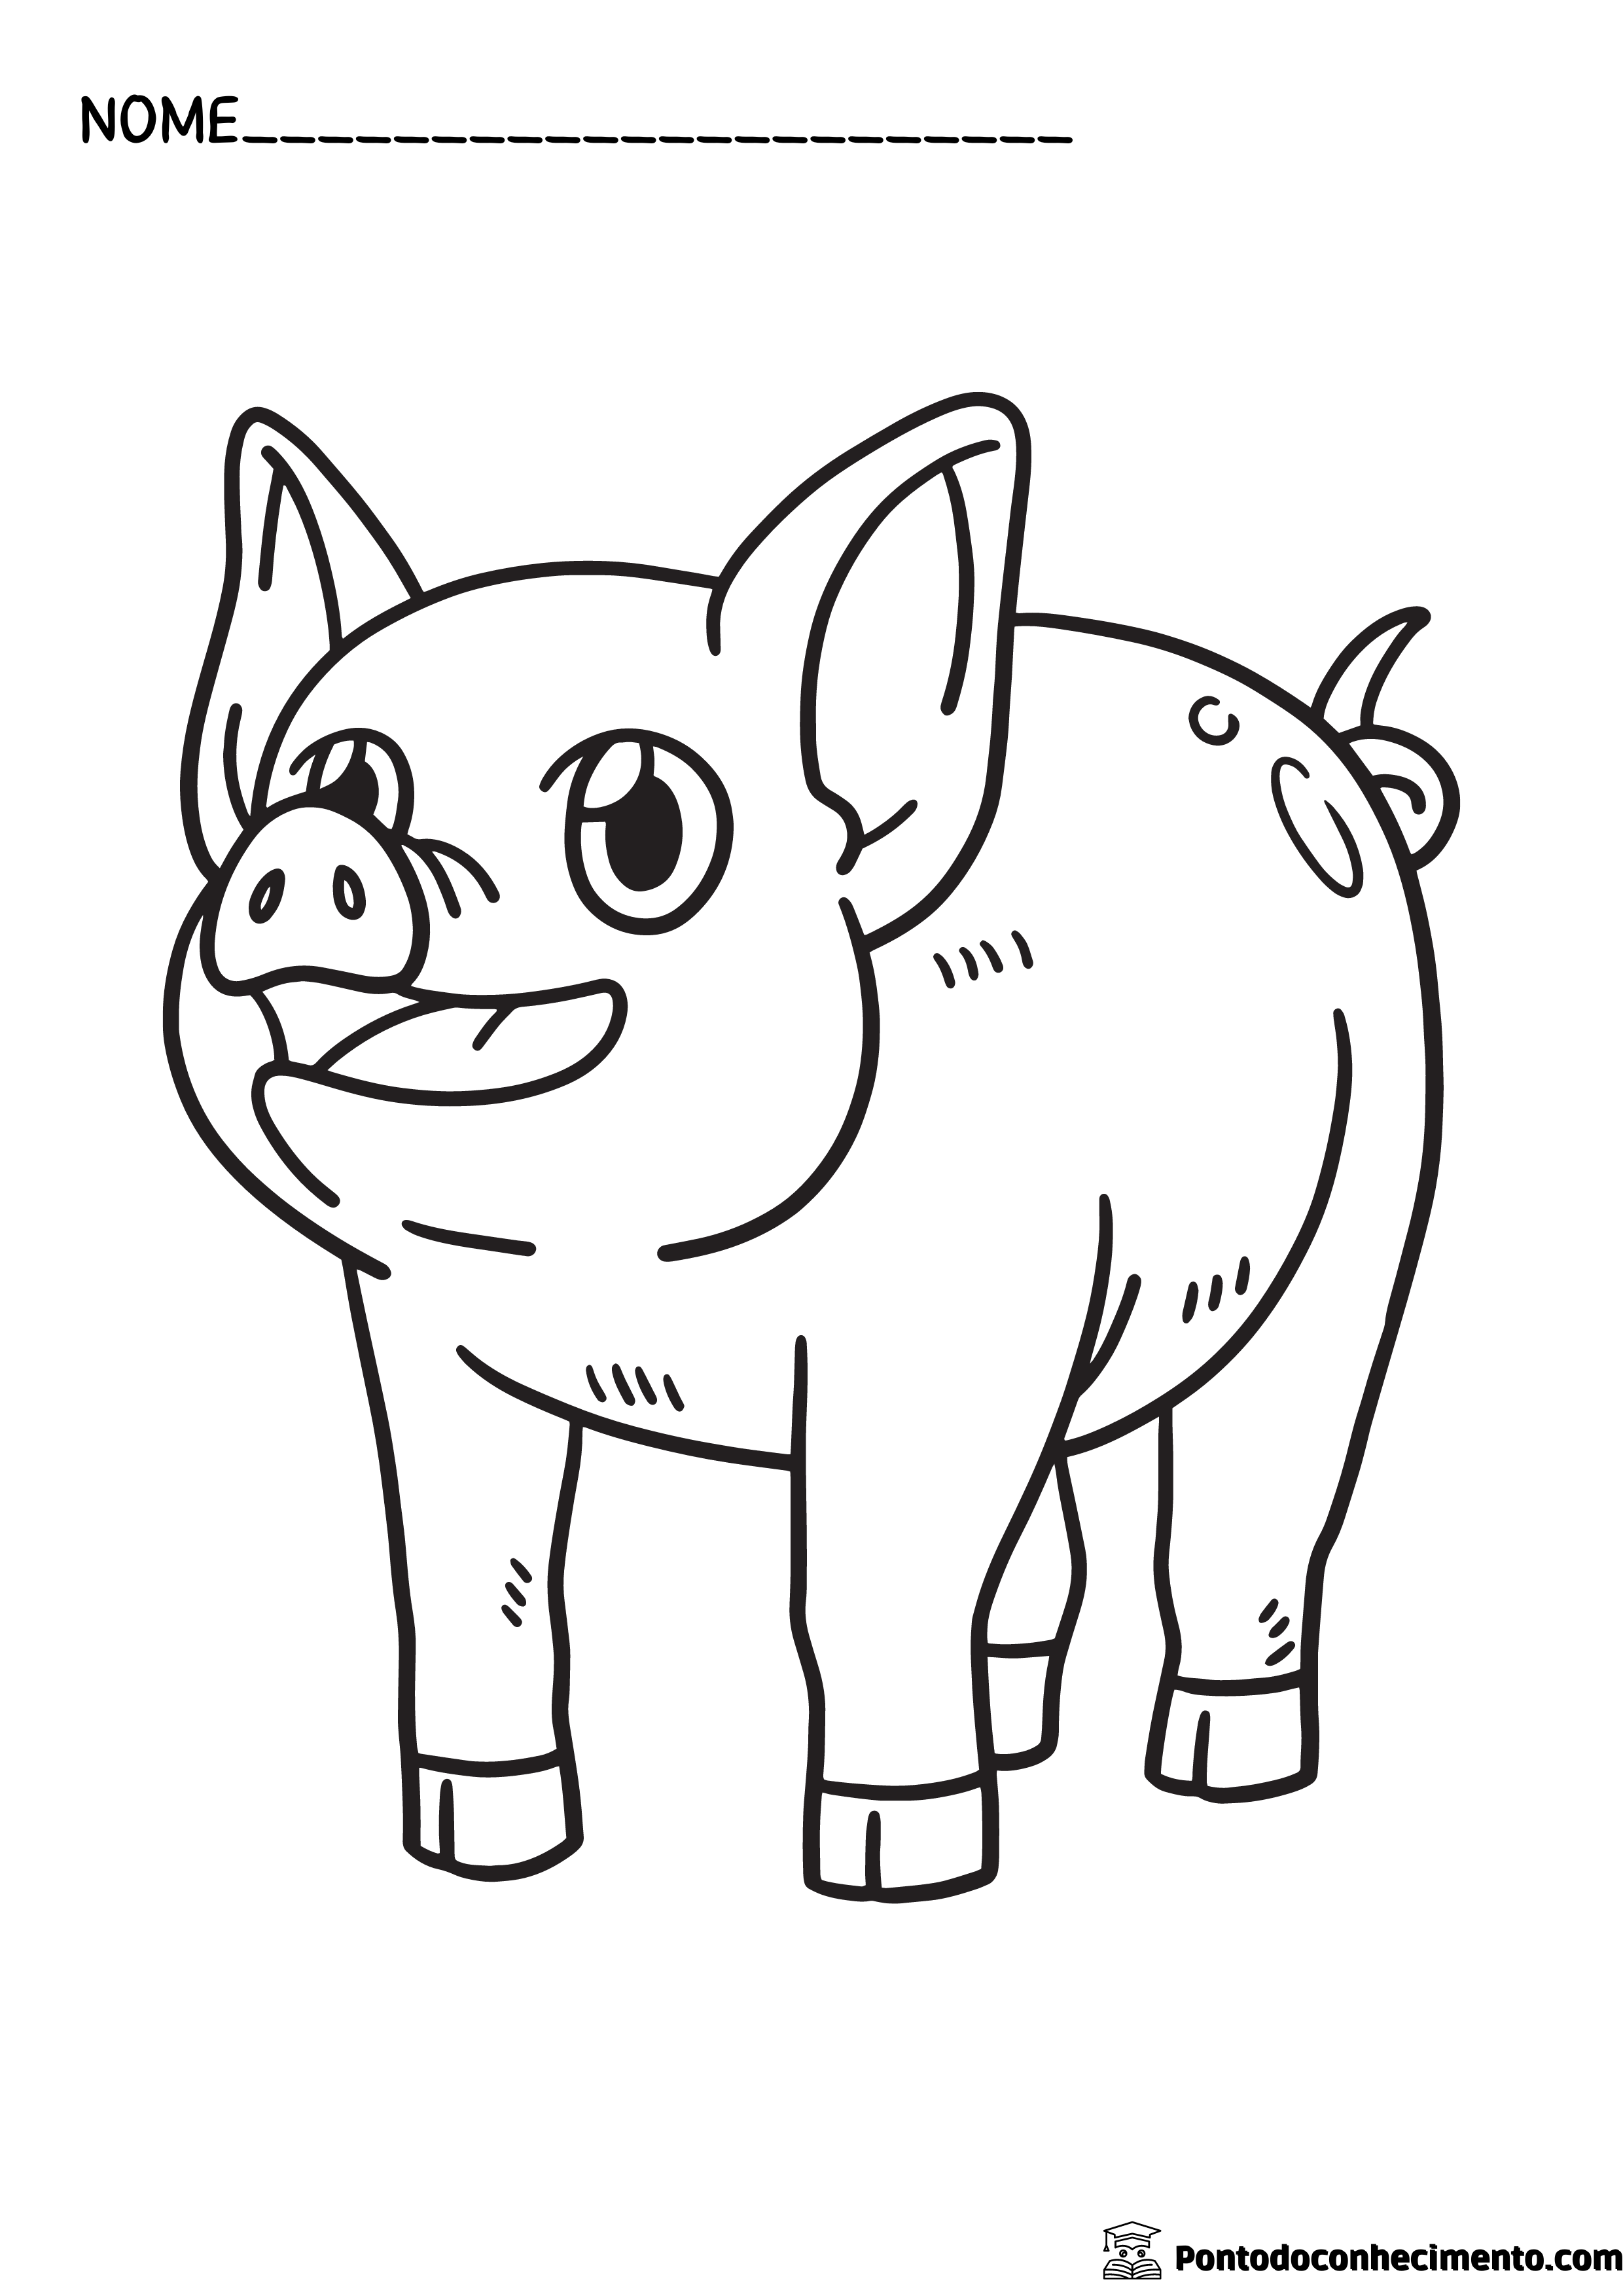 Desenhos infantis para colorir: porco